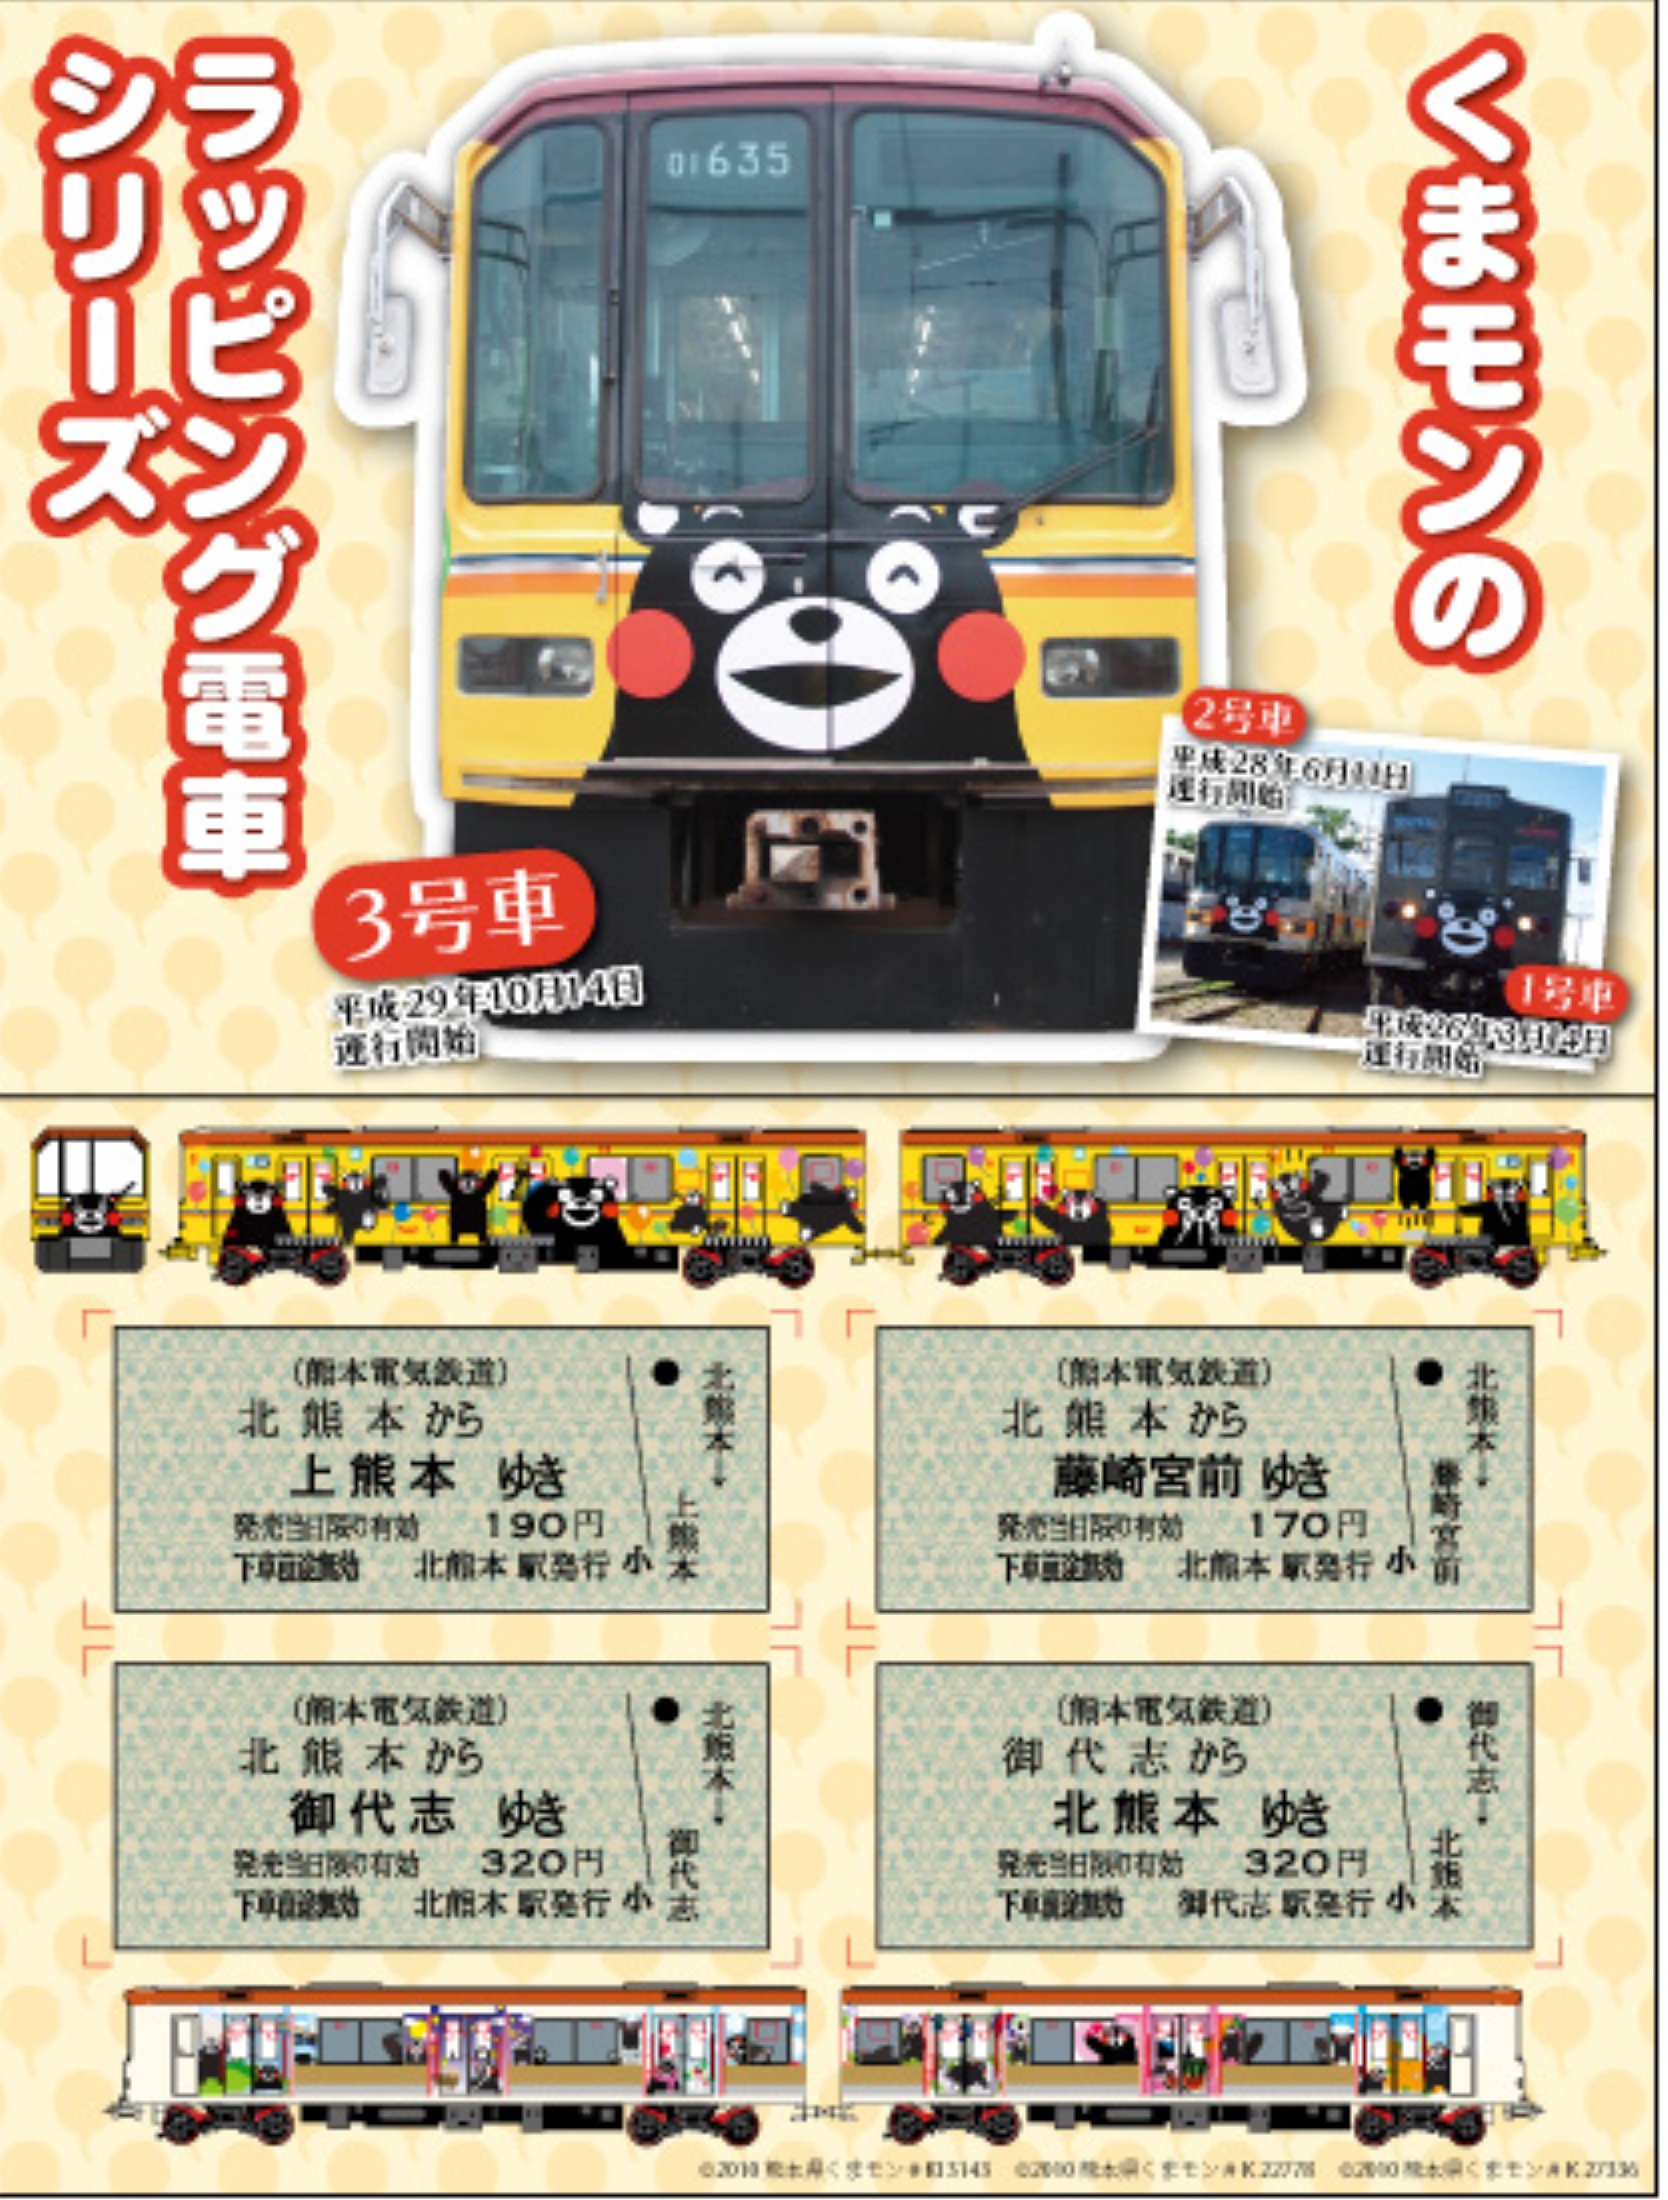 熊本電気鉄道 くまモンラッピング電車3号車乗車券 発売（2017年11月25